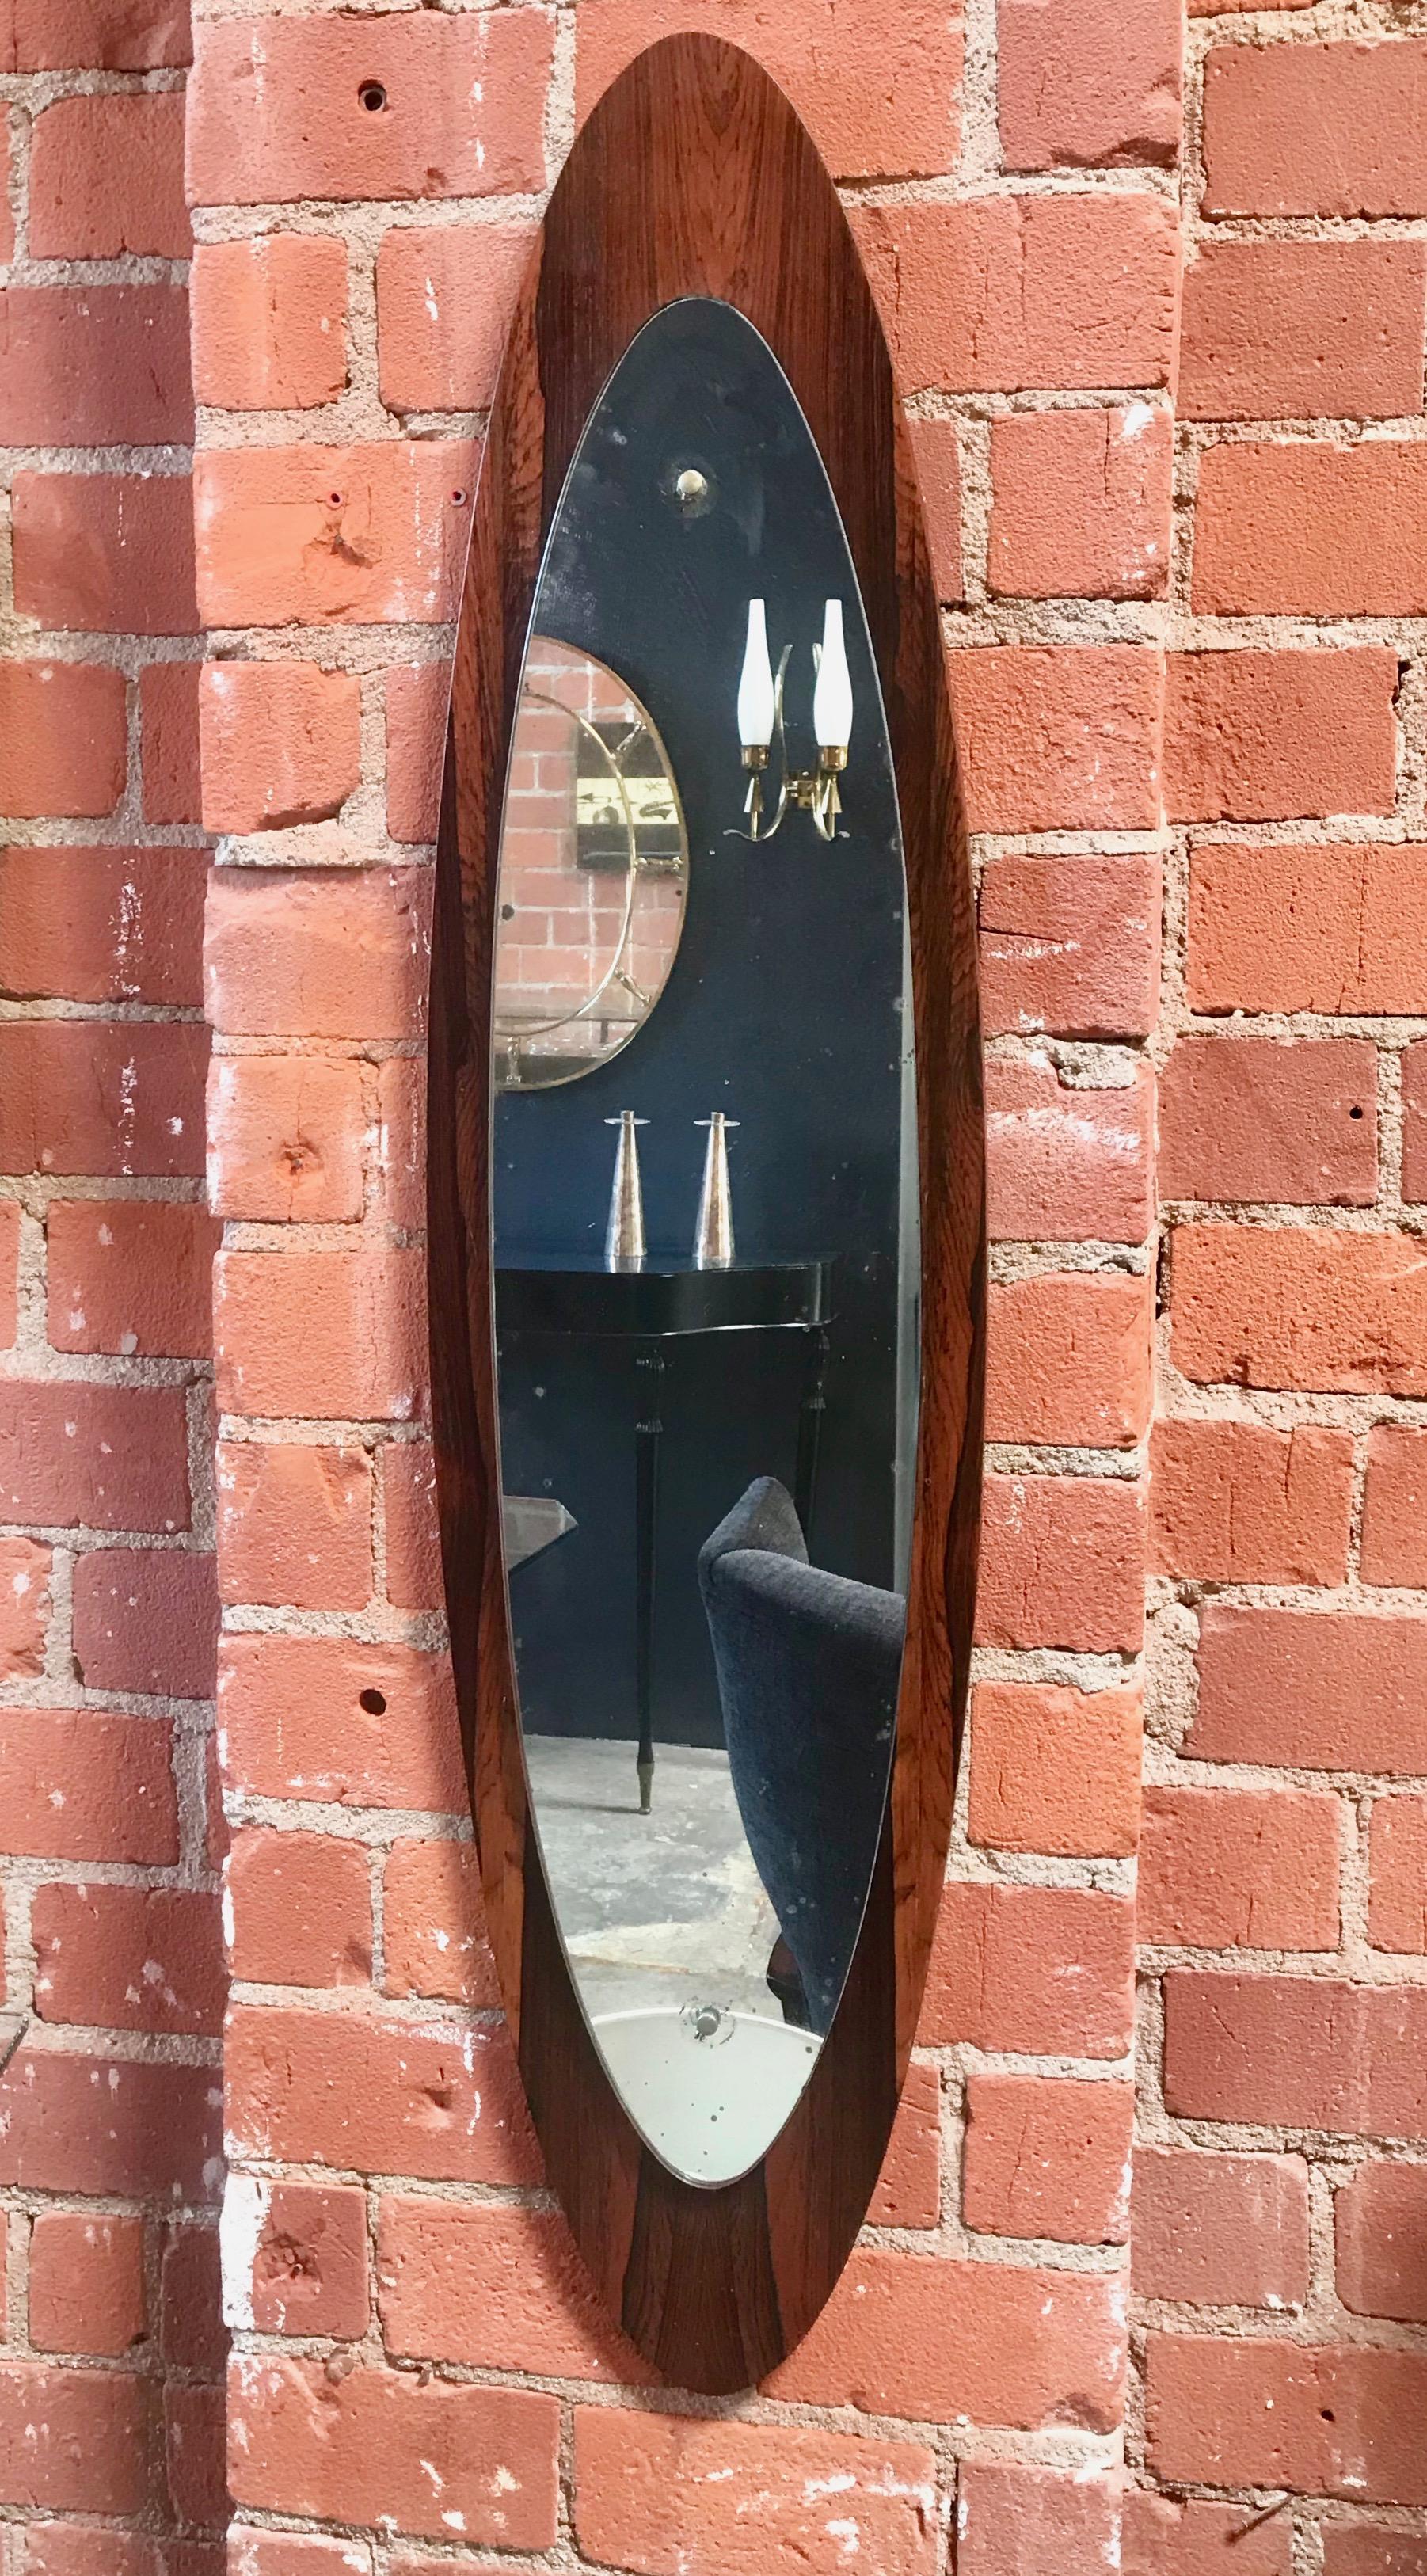 Grand cadre ovale en teck, avec verre ovale en miroir.
Le cadre en bois a une épaisseur différente dans la largeur apicale ;
Il est magnifique, que ce soit en version verticale ou horizontale.
 